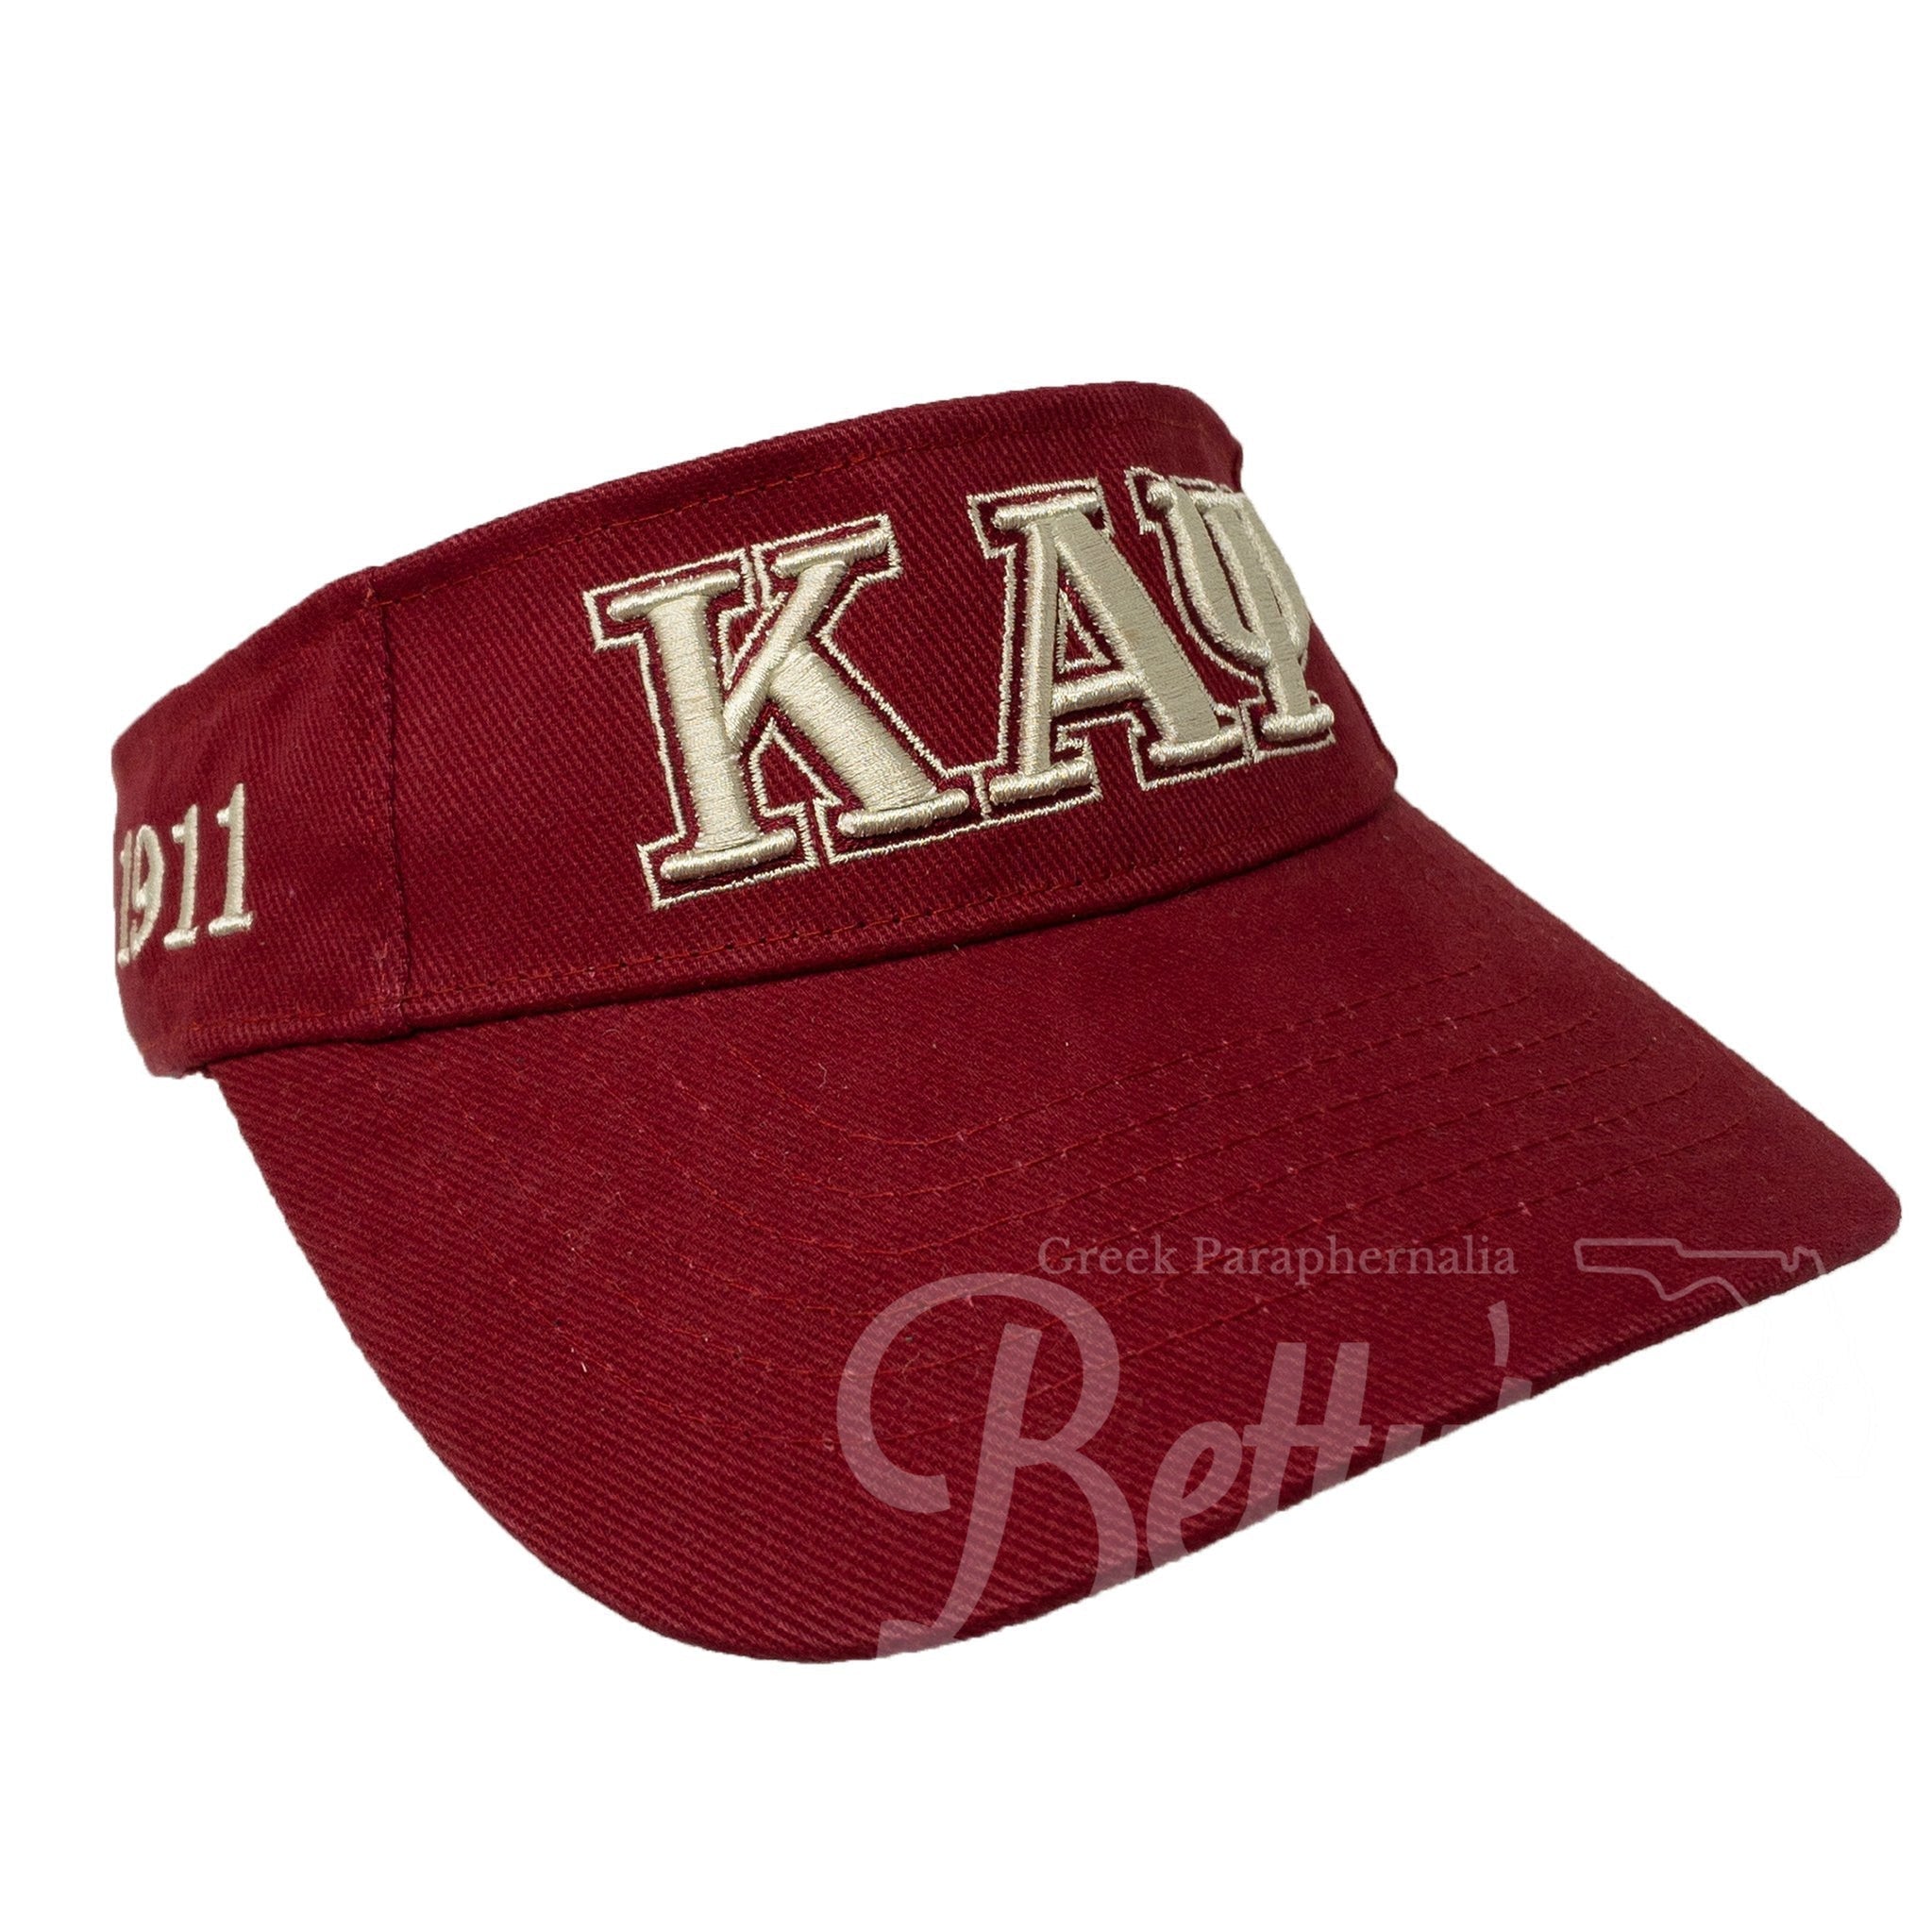 ΚΑΨ Hats - Kappa Alpha Psi-Betty's Promos Plus, LLC